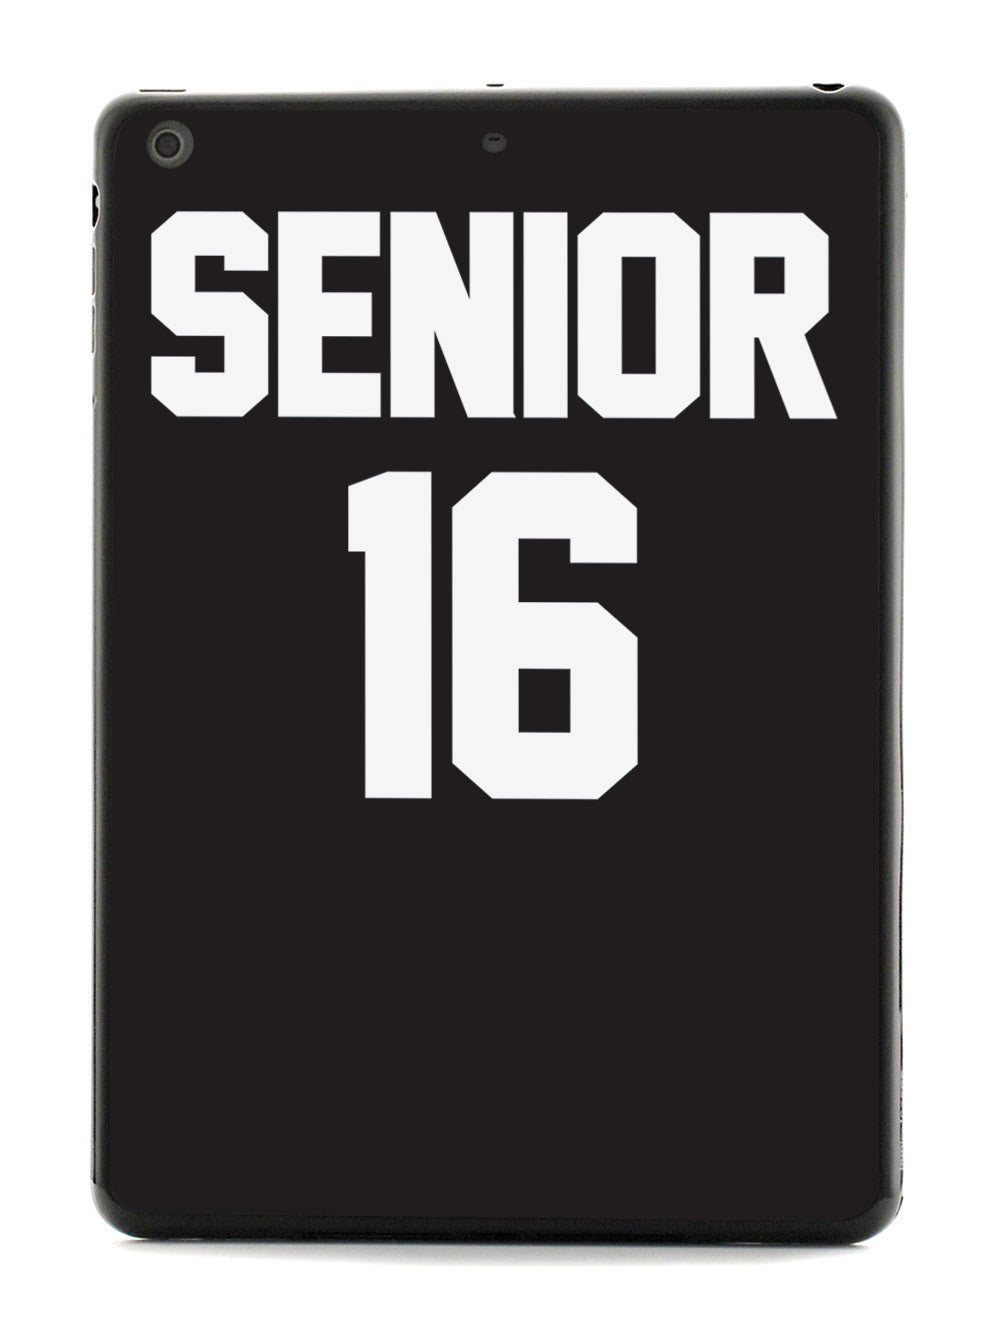 Senior 16 - Class of 2016 Case